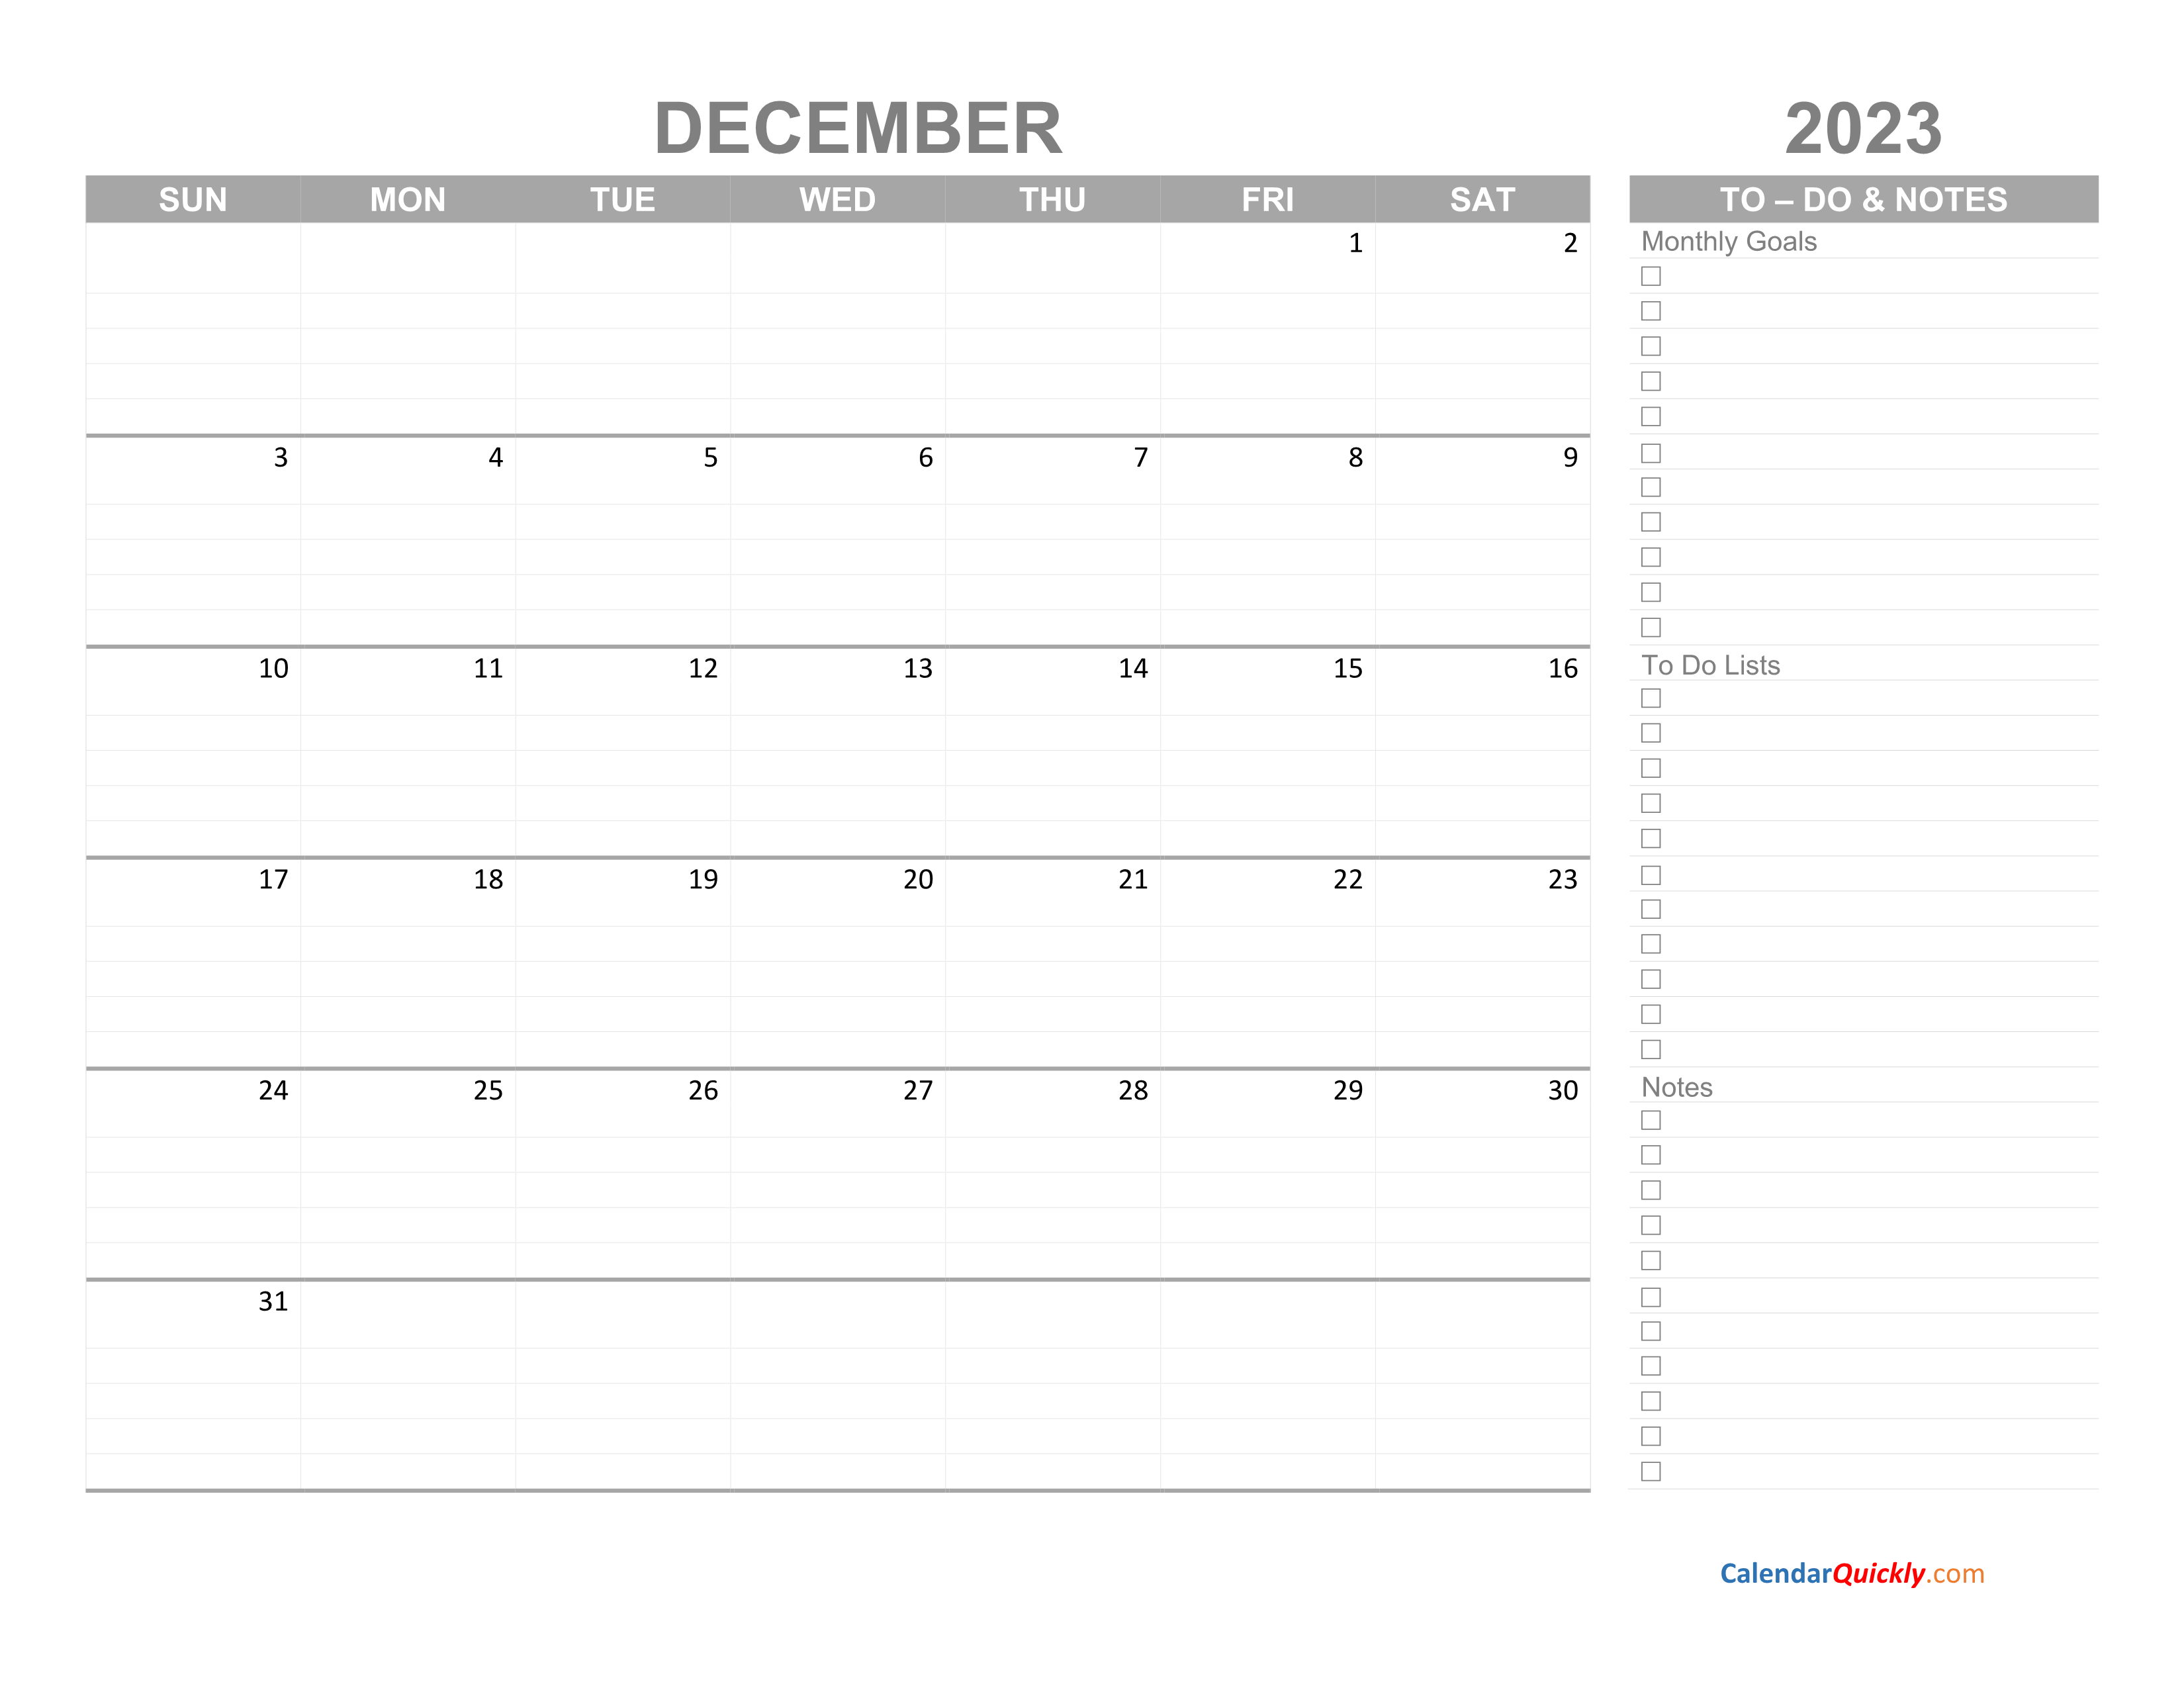 december-2023-calendar-with-to-do-list-calendar-quickly